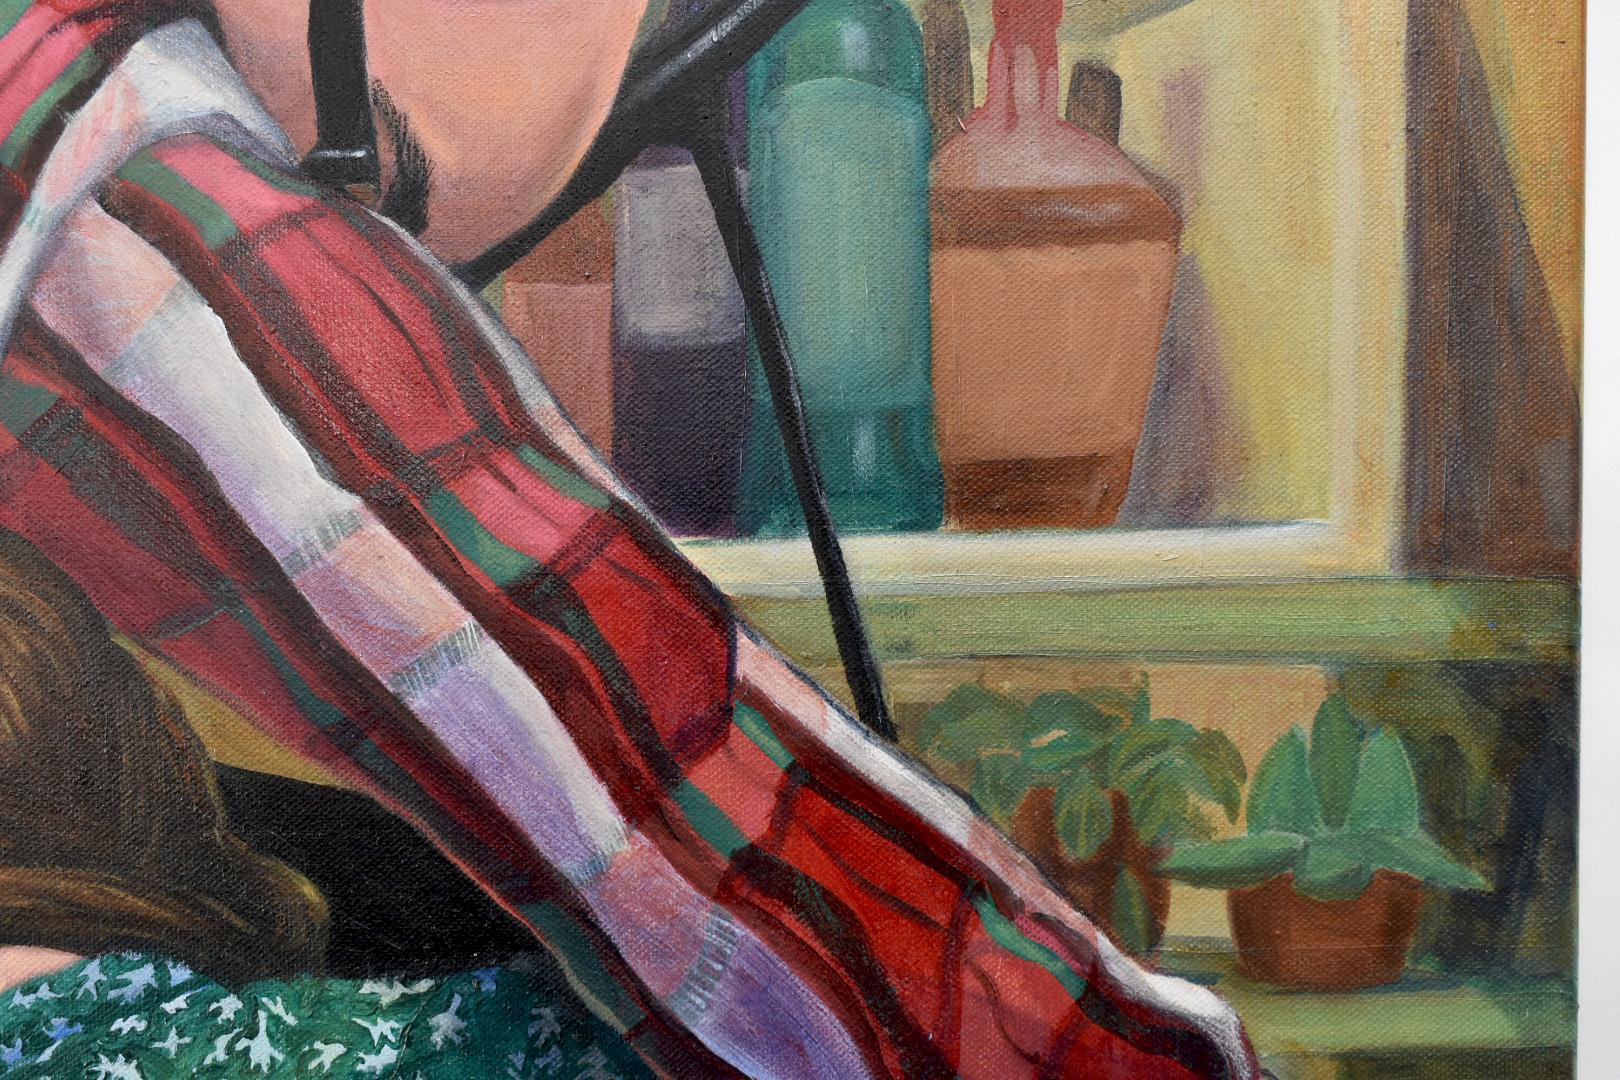 Piano Players par Emily Royer, peinture à l'huile contemporaine sur toile 24